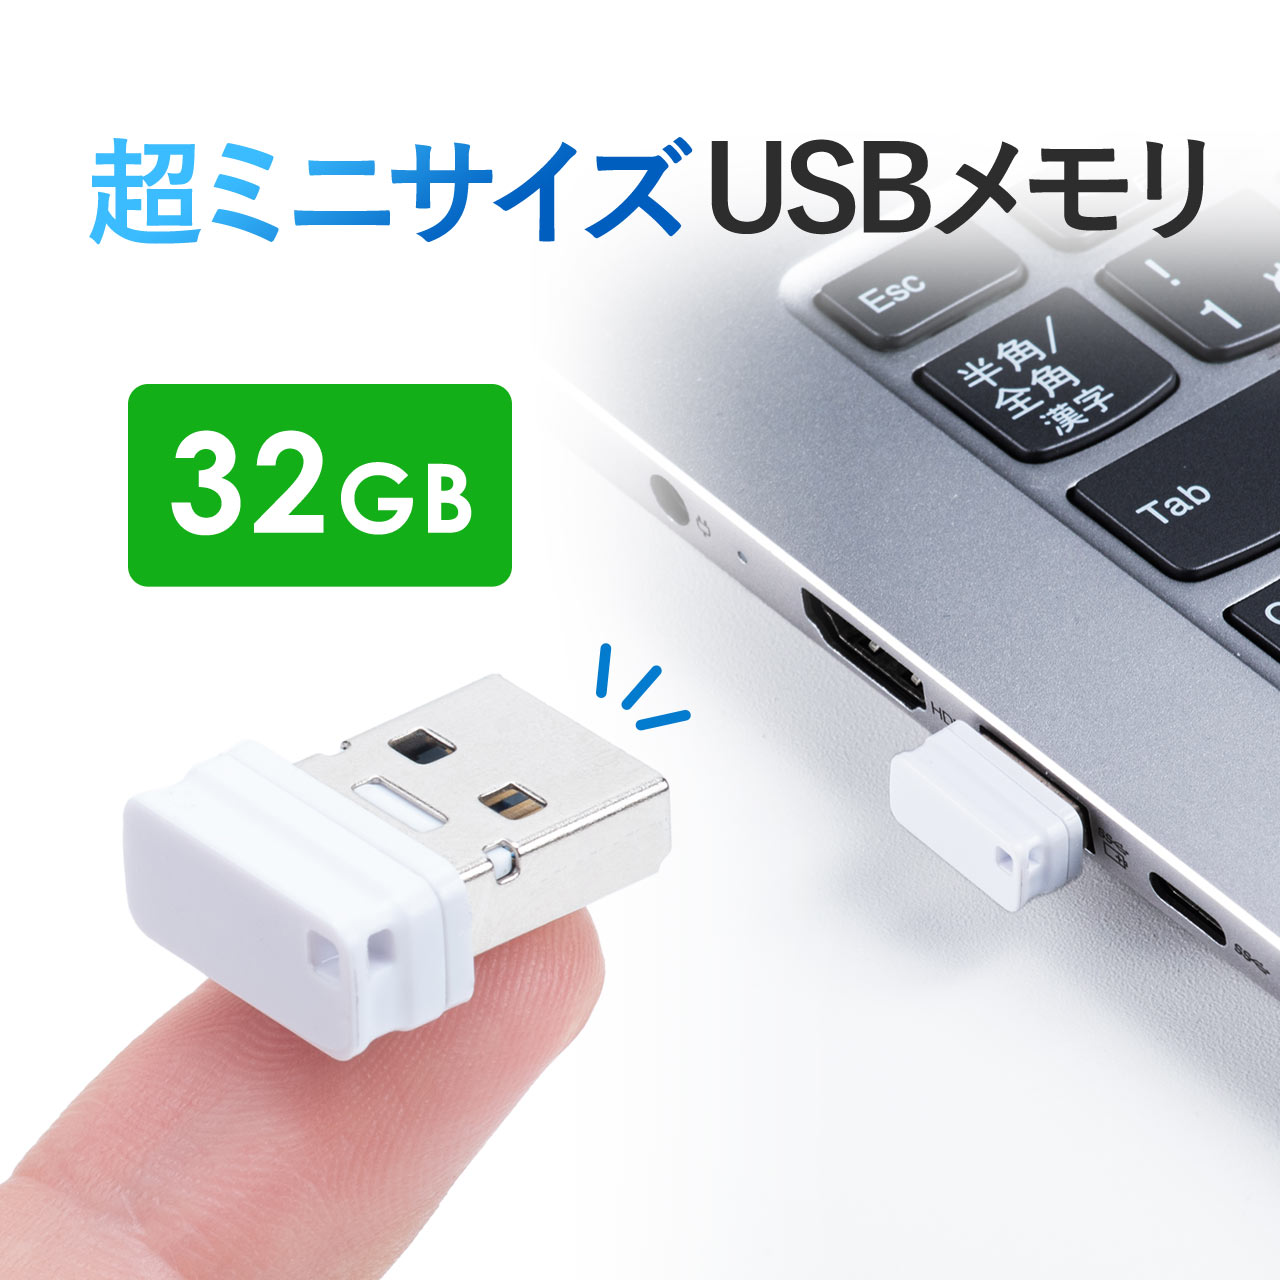 USBメモリ 超小型 高速データ転送 キャップ式 32GB 